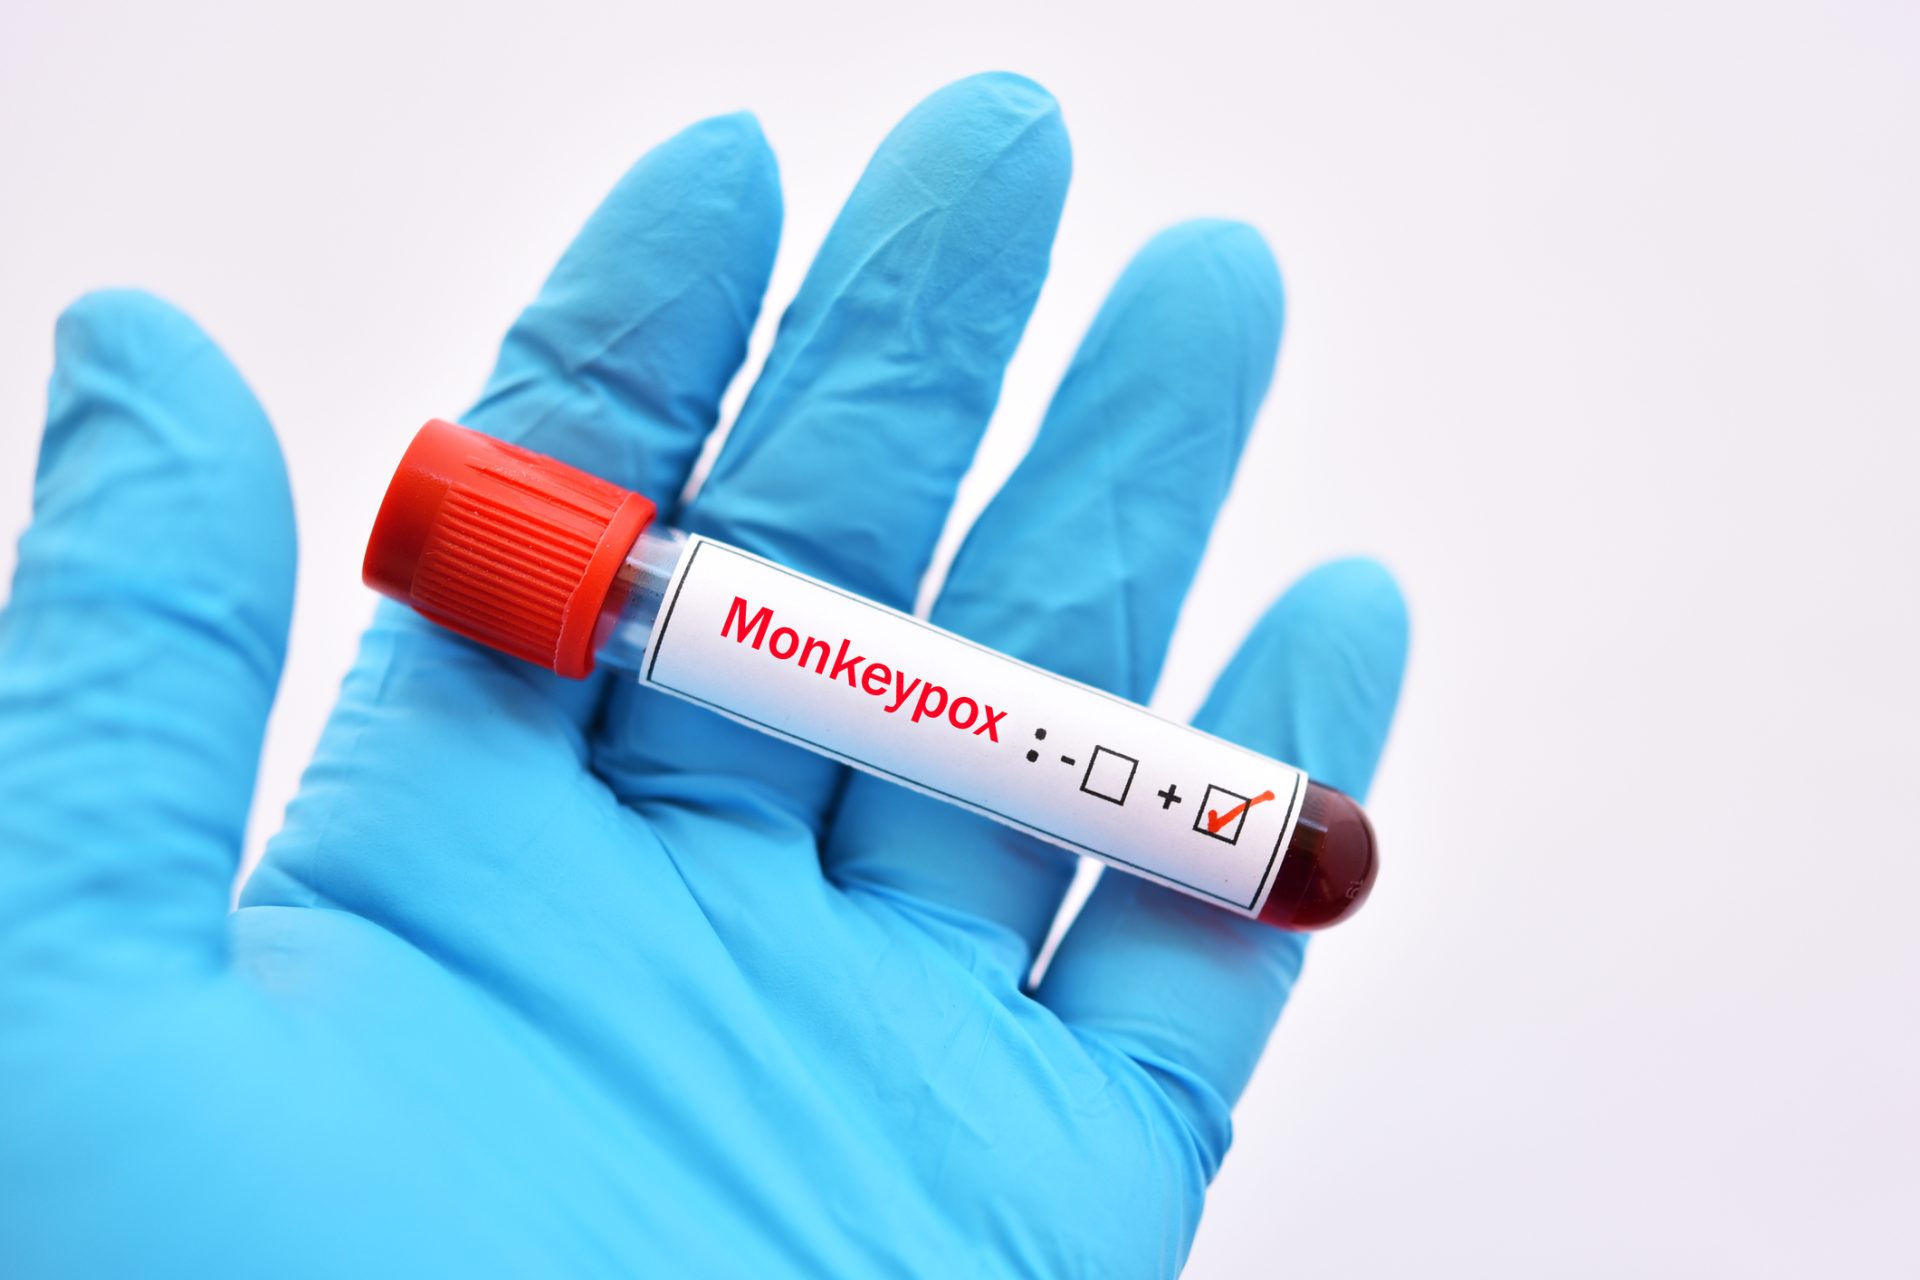 CDC diz que monkeypox “não é a covid-19” e não se transmite facilmente pelo ar